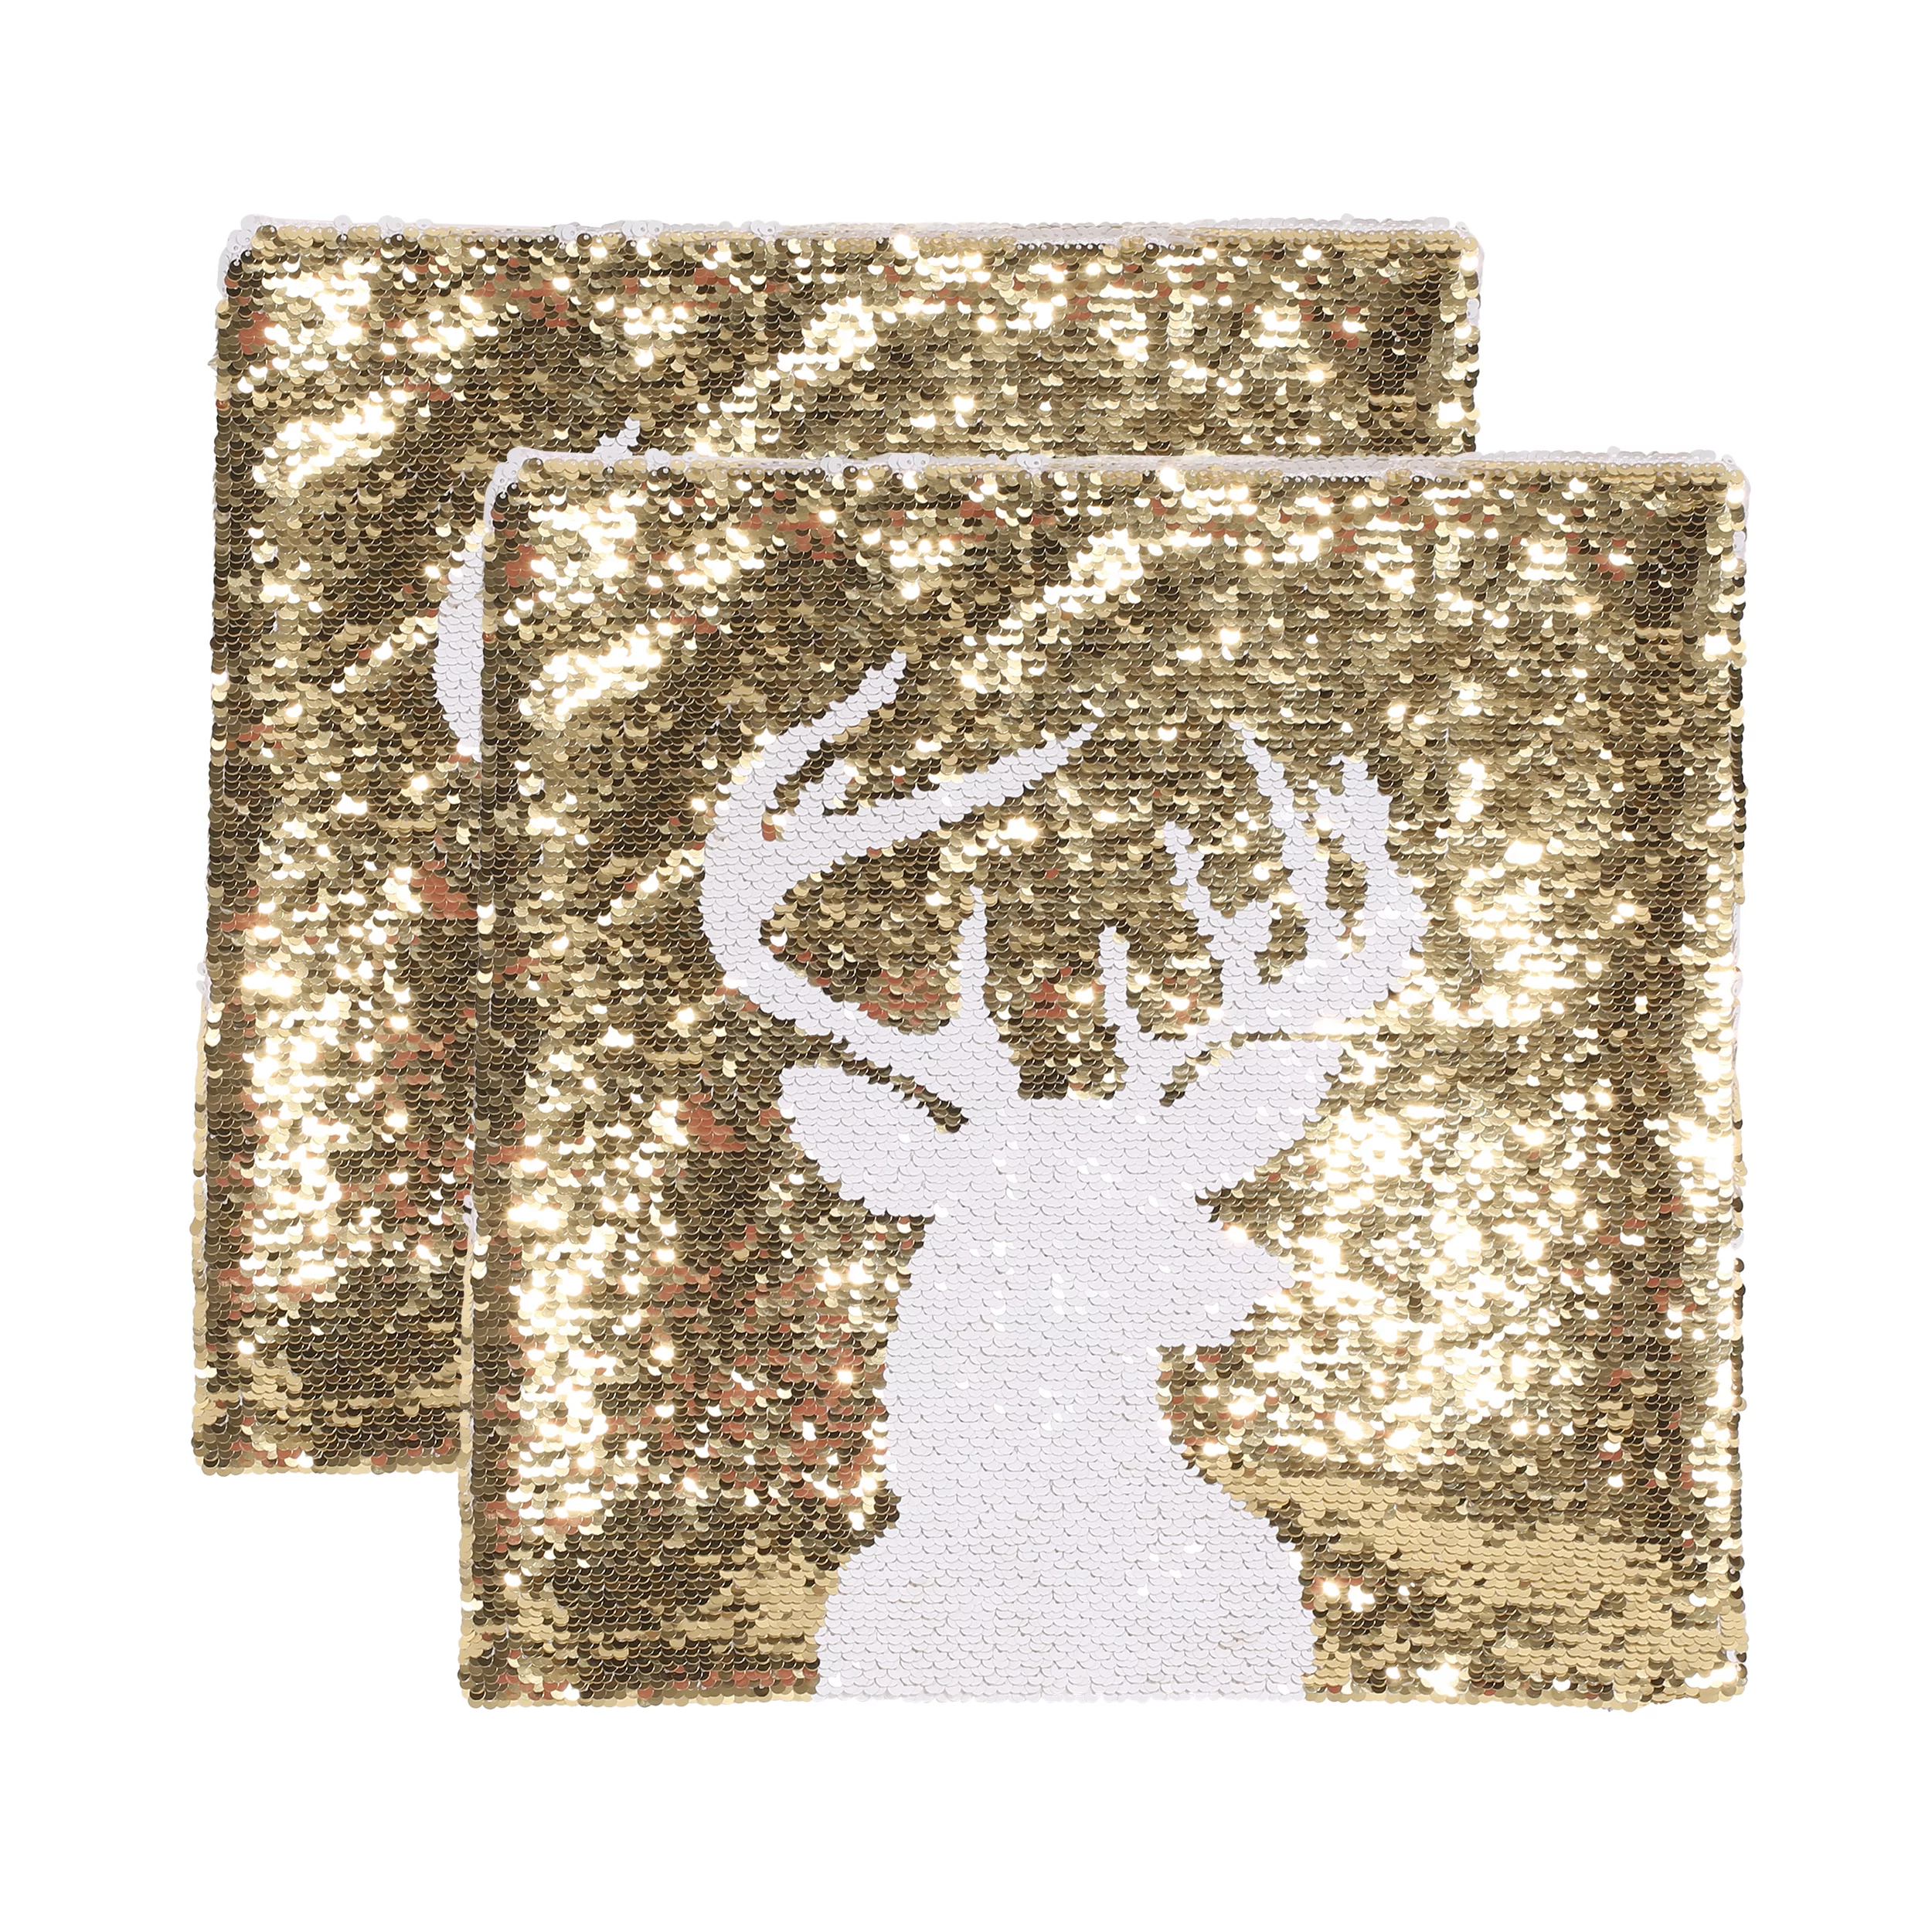 Noble House Nahanni Velvet Reindeer Throw Pillow Cover, Set of 2, Gold, White Sequin, 18" x 18"